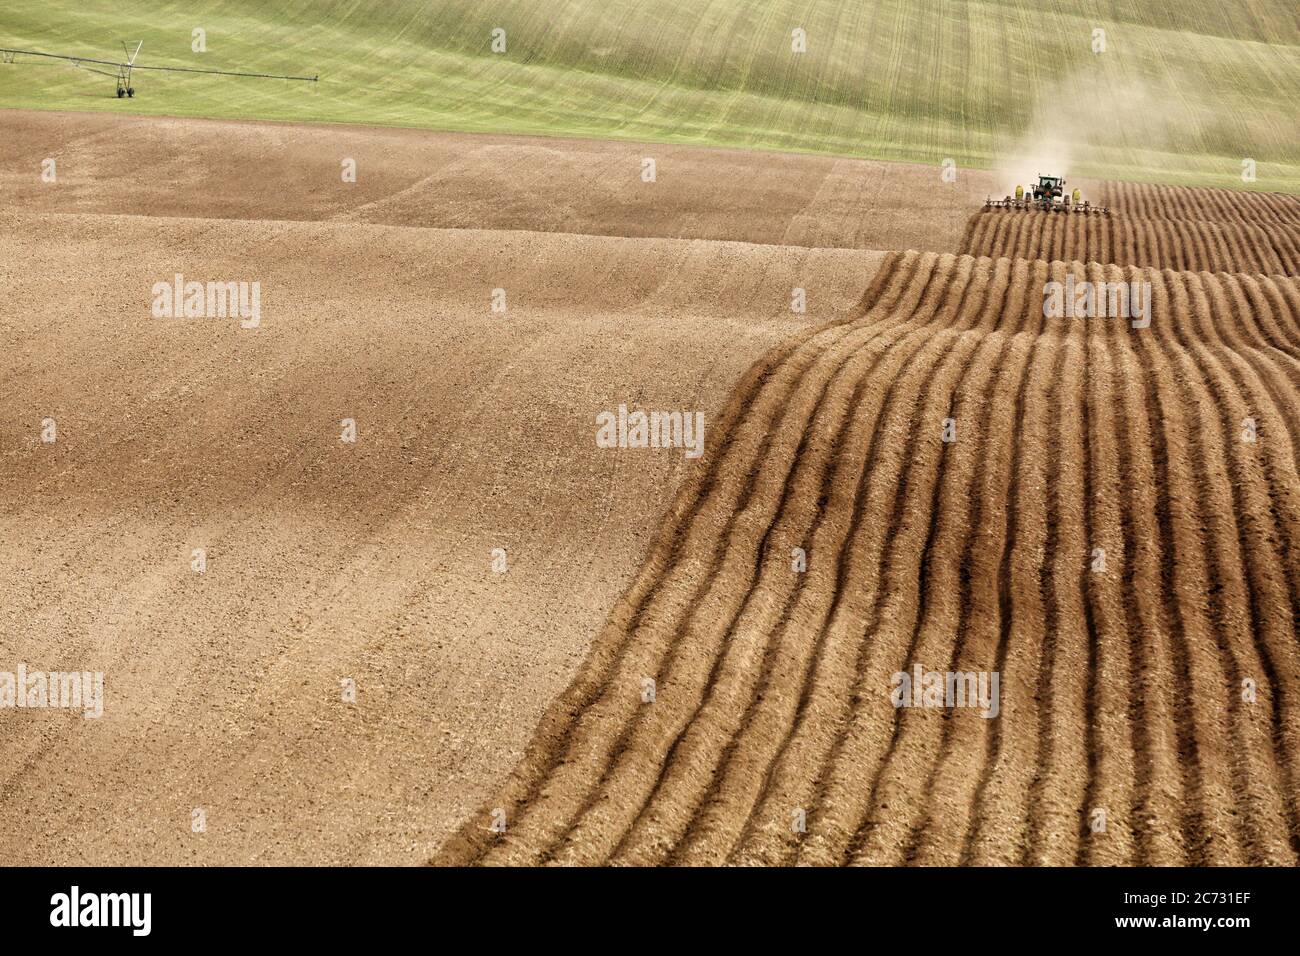 Un tracteur dans un champ de ferme, tirant un outil de labour et de culture, pour labourer et aérer le sol en préparation pour la plantation de pommes de terre de l'Idaho. Banque D'Images